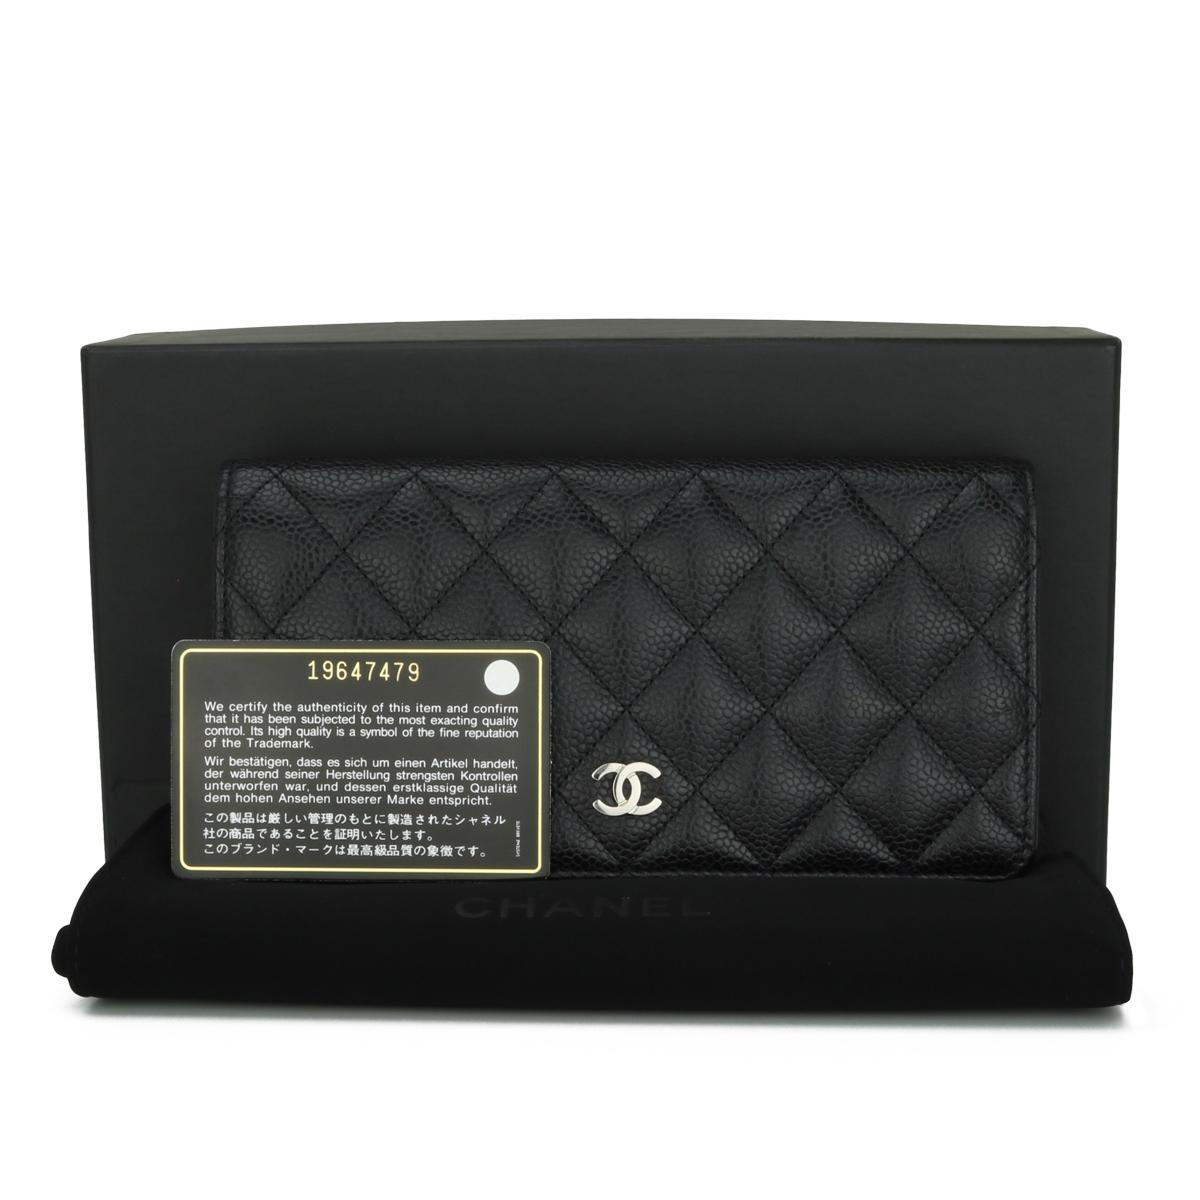 Chanel Quilted Classic Long Flap Yen Brieftasche in Schwarz Kaviar mit Silber Hardware 2014.

Dieses atemberaubende Portemonnaie ist in sehr gutem Zustand, das Portemonnaie hat noch seine ursprüngliche Form, und die Hardware ist noch sehr